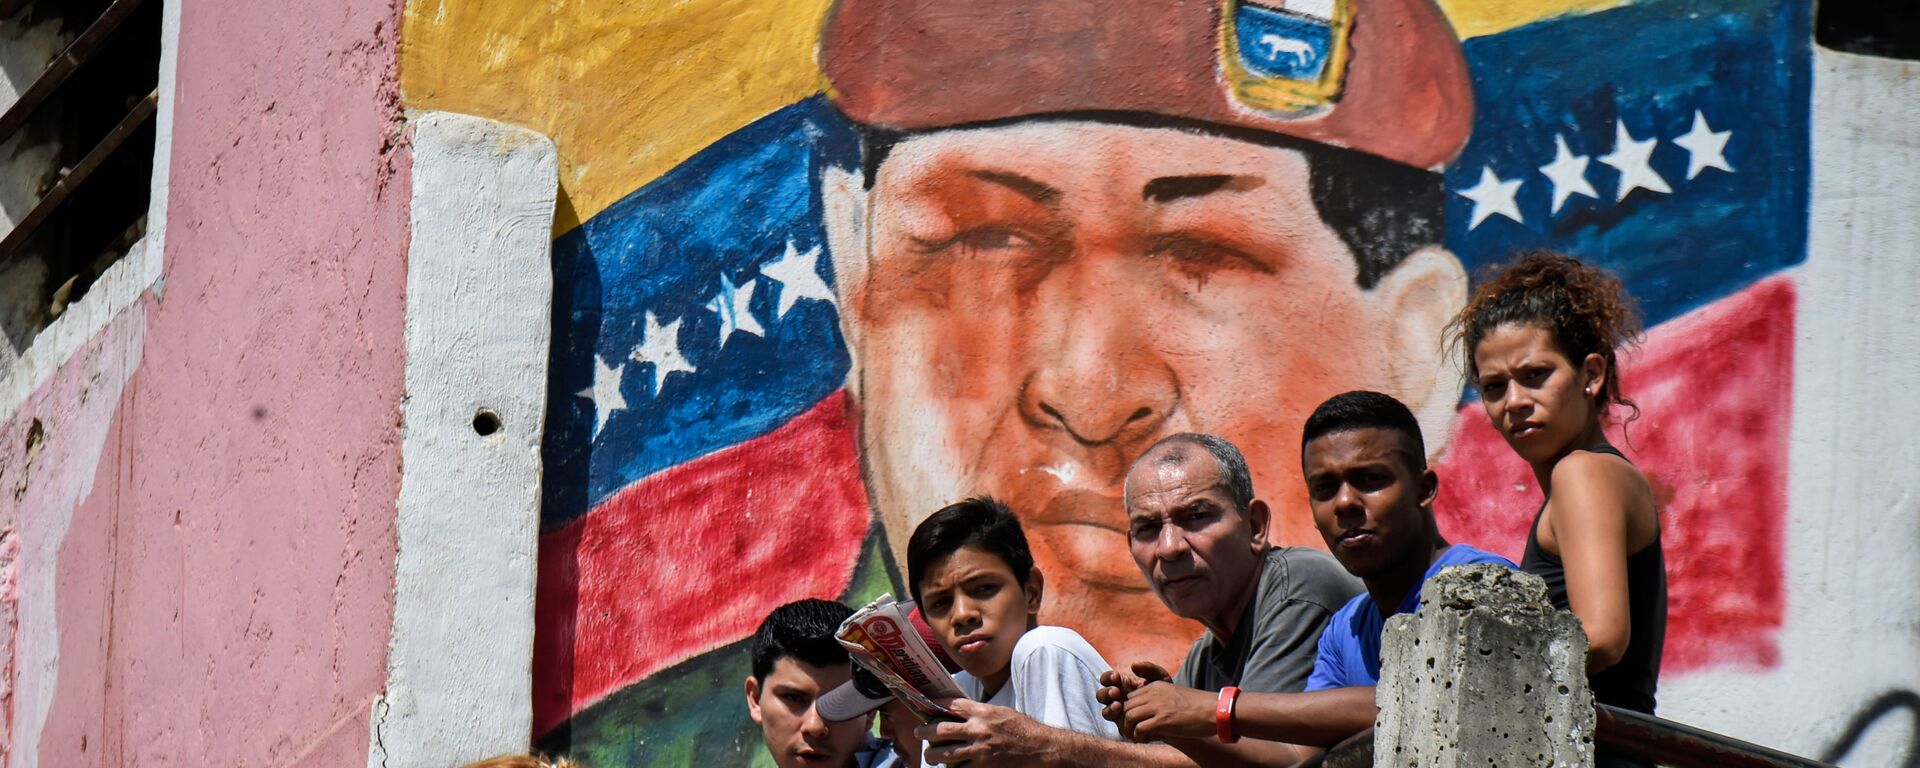 Граффити с изображением бывшего президента Венесуэла Уго Чавеса в Каракасе  - Sputnik Mundo, 1920, 18.09.2021